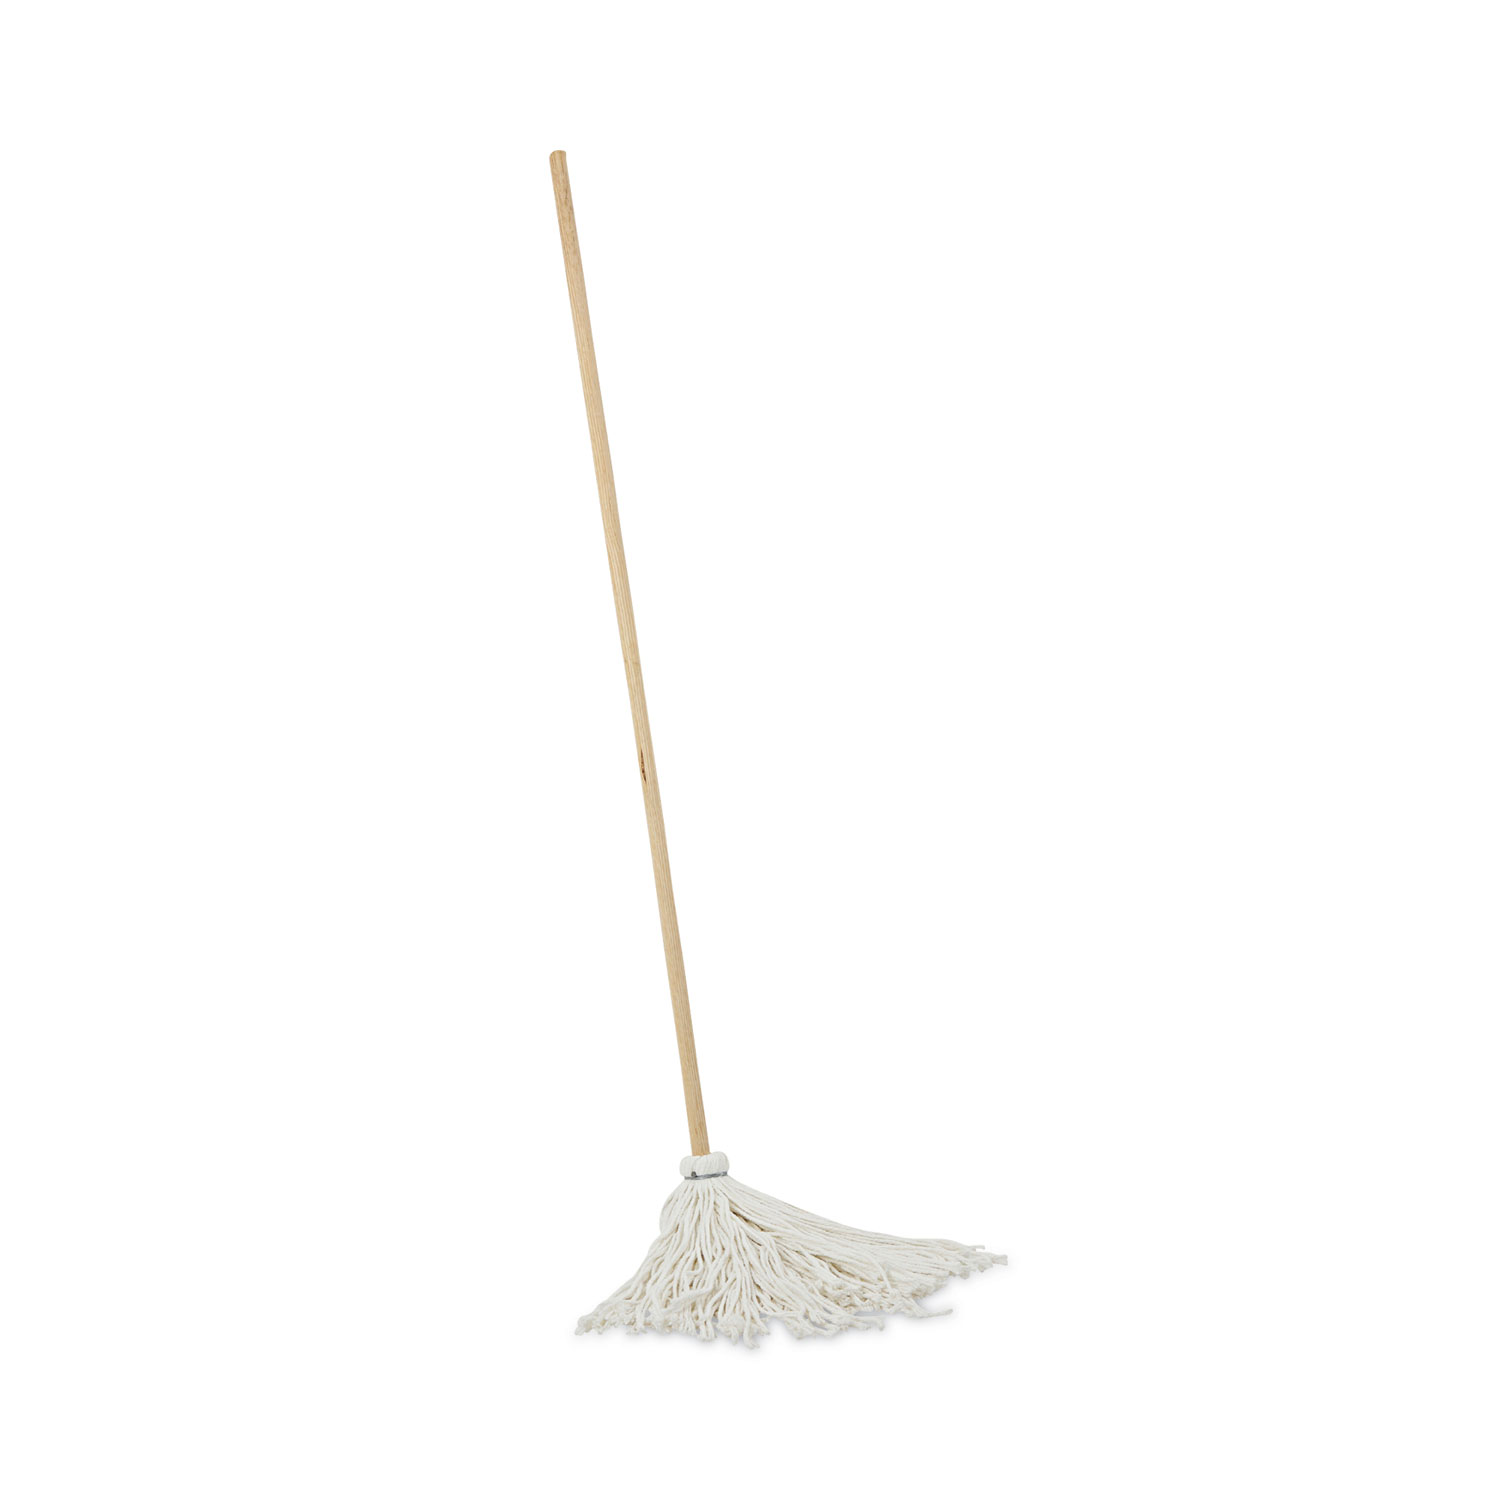 Swiffer Sweeper 10.4 in. W X 8 in. L Dry Cloth Mop Pad 16 pk – Hi